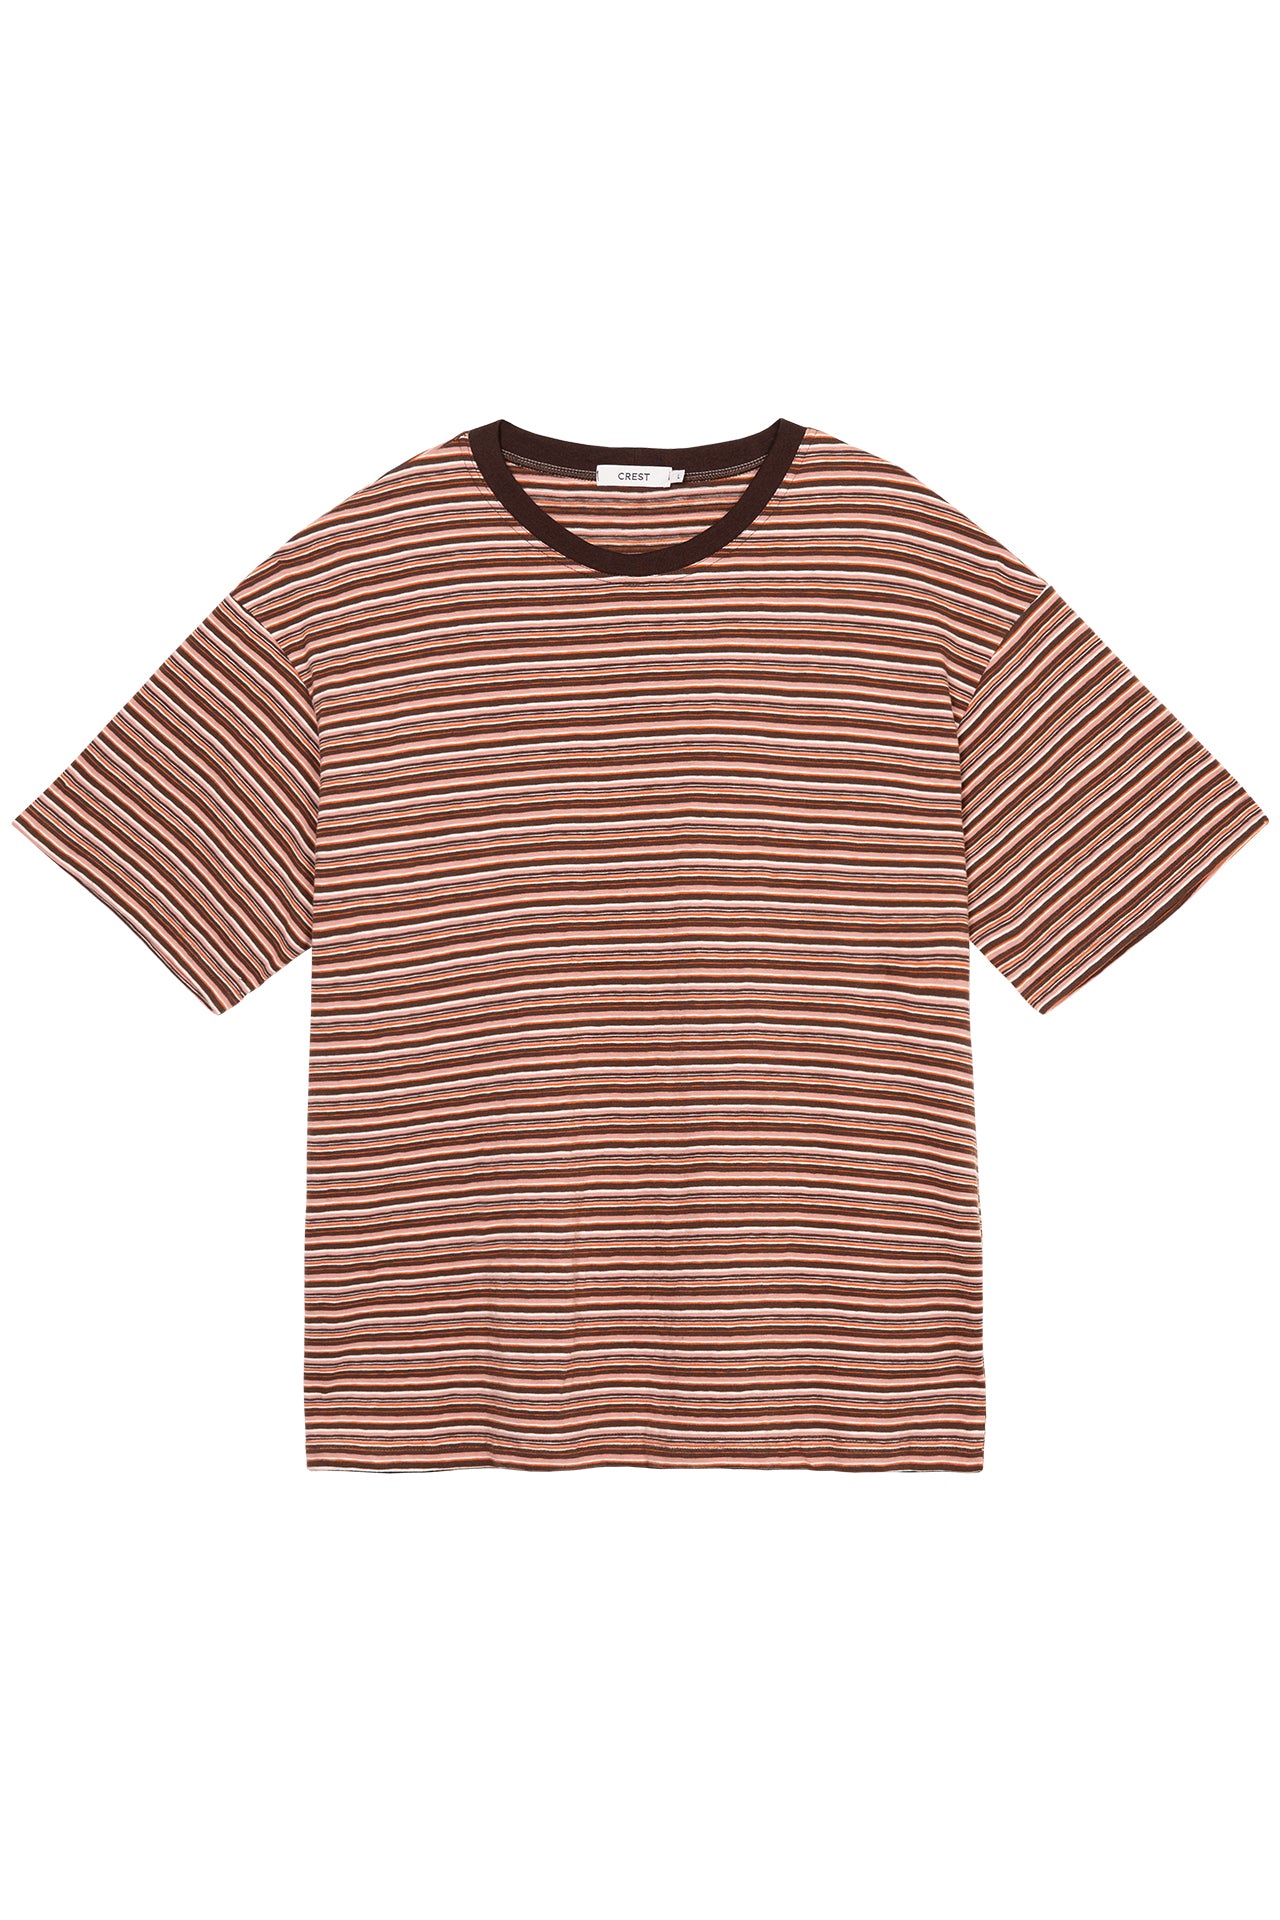 Comodo Striped T-Shirt